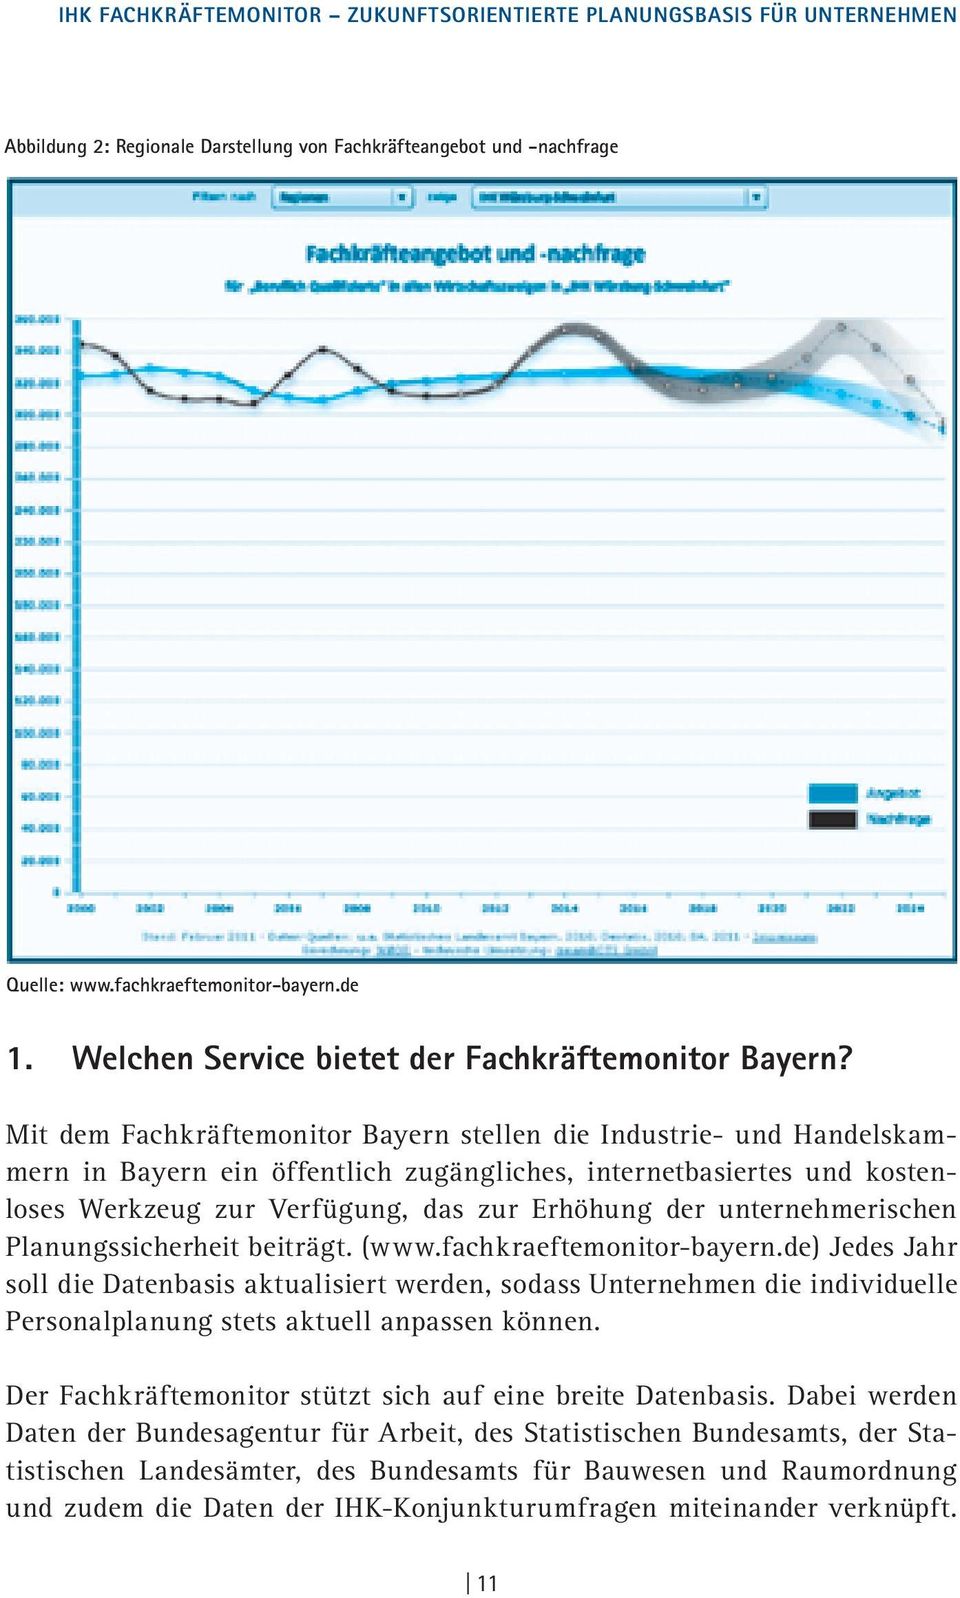 Mit dem Fachkräftemonitor Bayern stellen die Industrie- und Handelskammern in Bayern ein öffentlich zugängliches, internetbasiertes und kostenloses Werkzeug zur Verfügung, das zur Erhöhung der